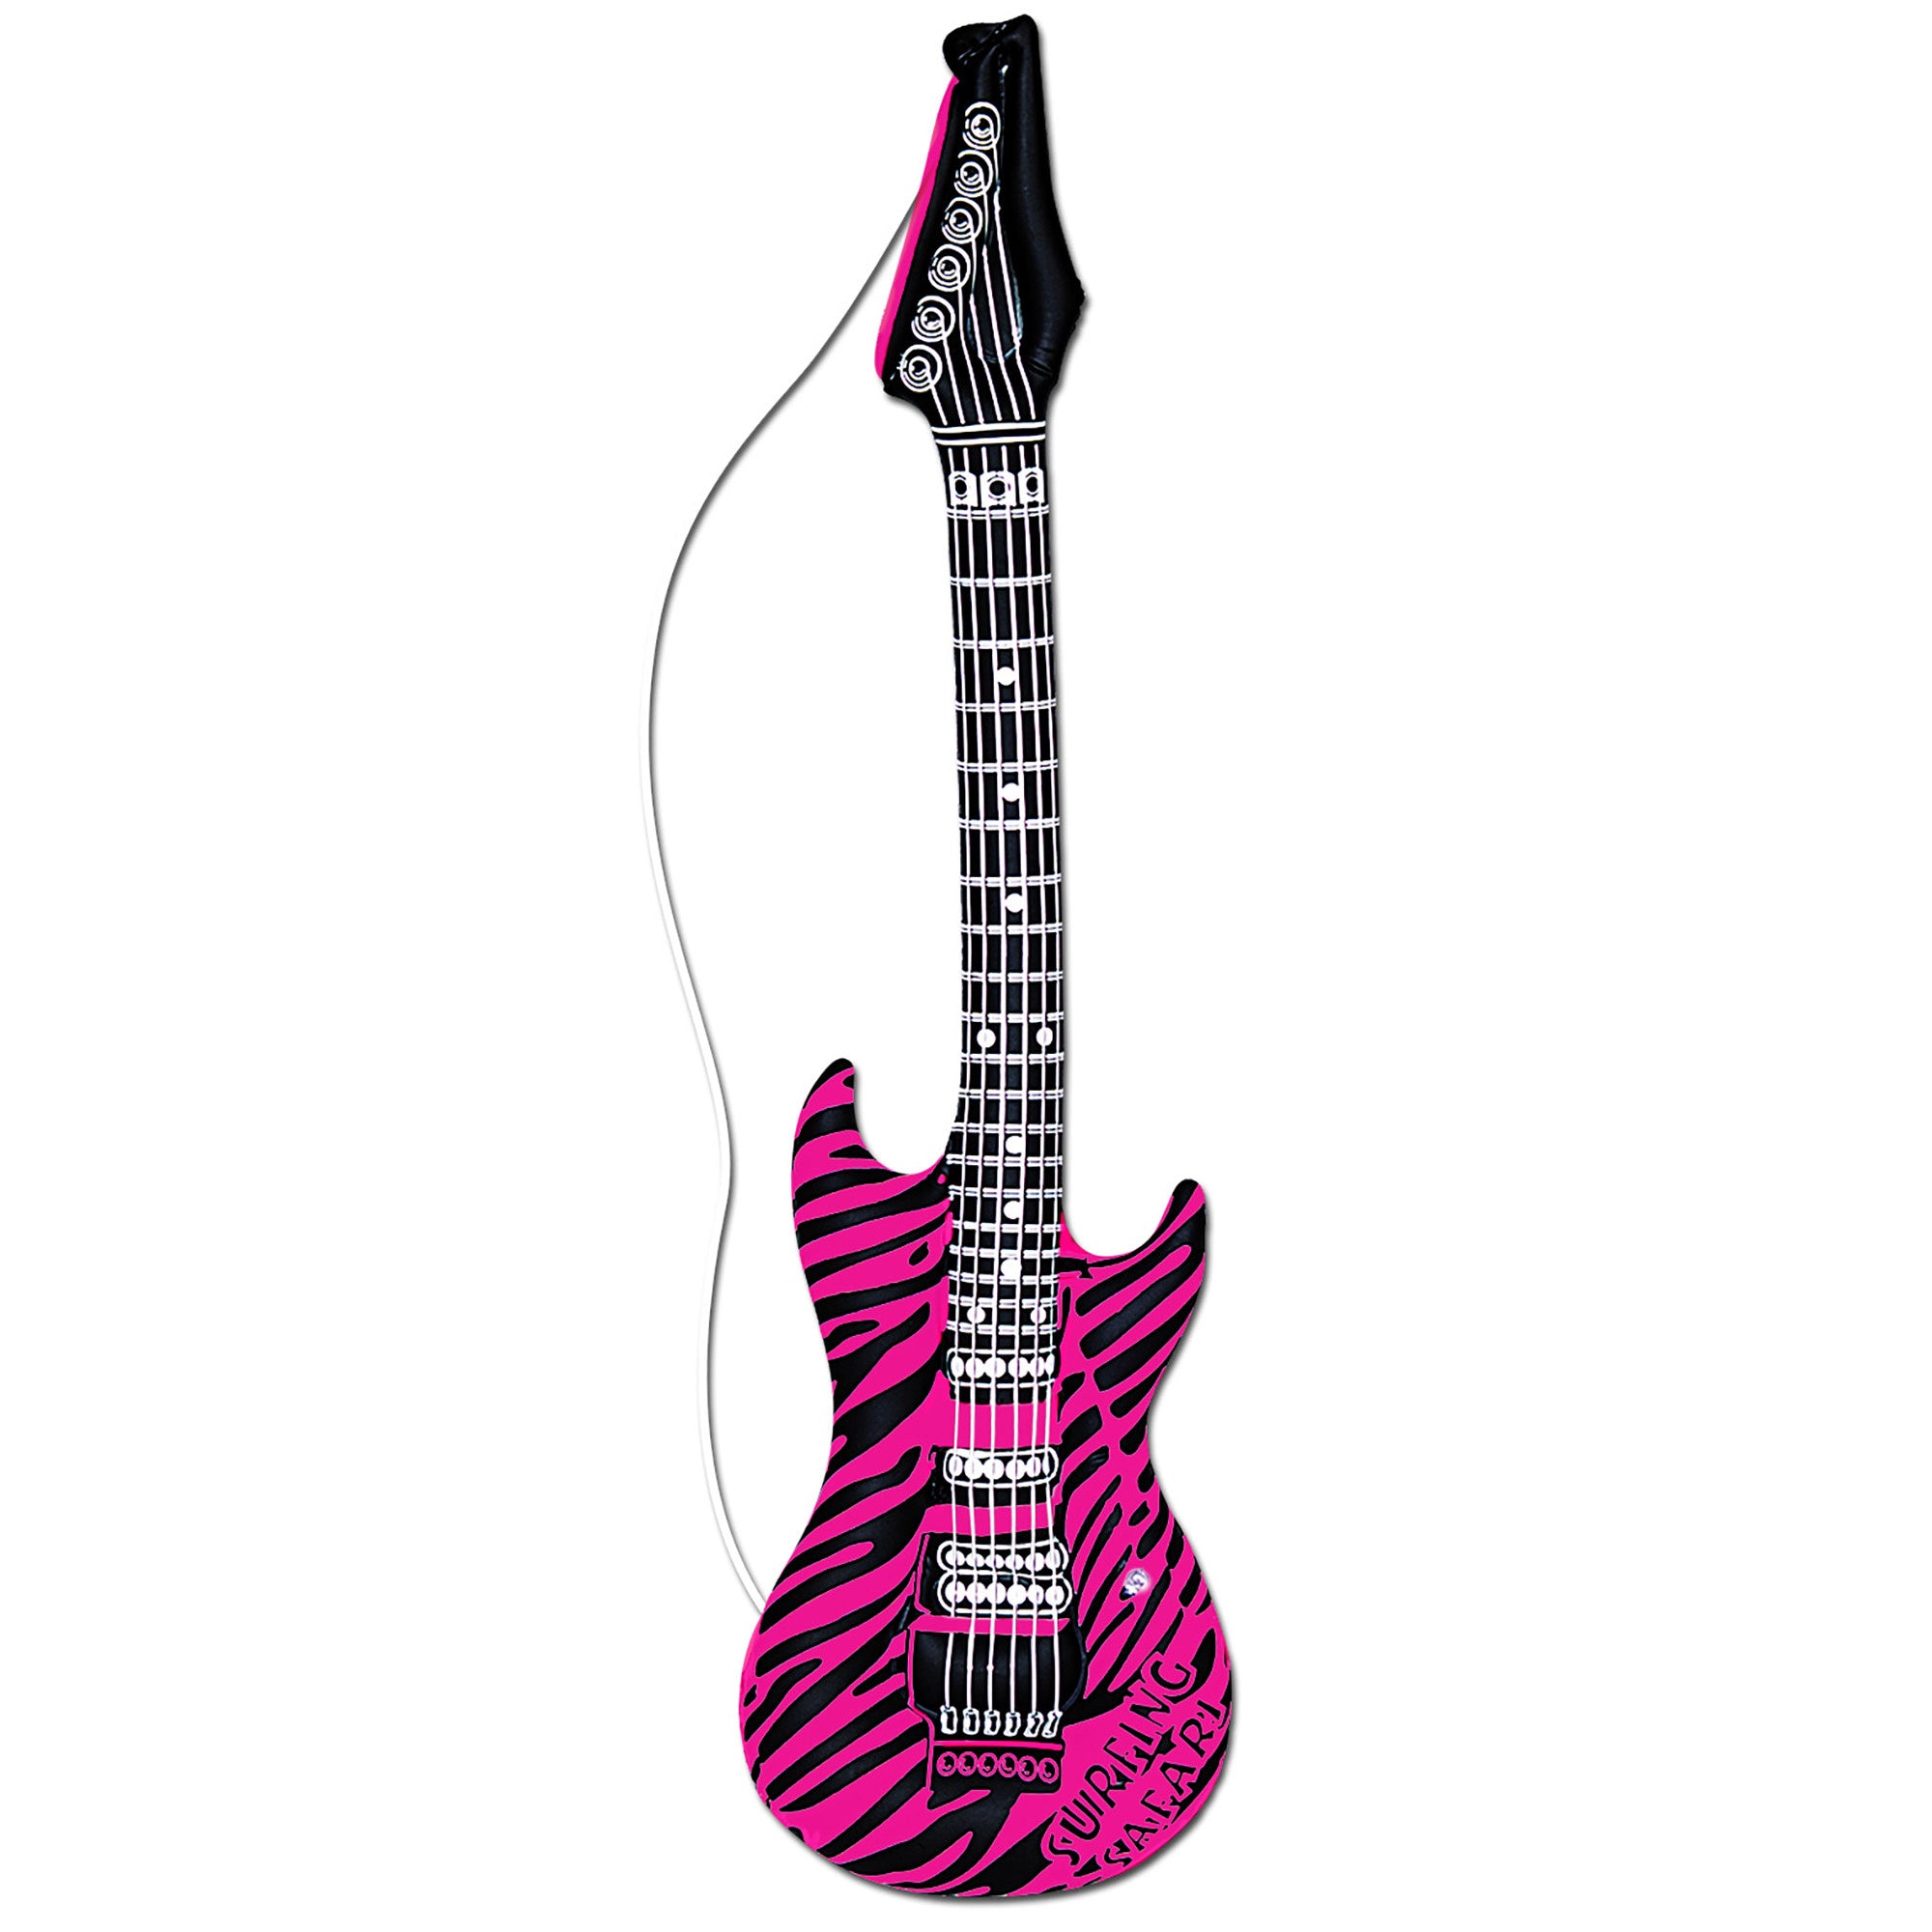 Opblaasbare roze gitaar met zebraprint voor carnaval